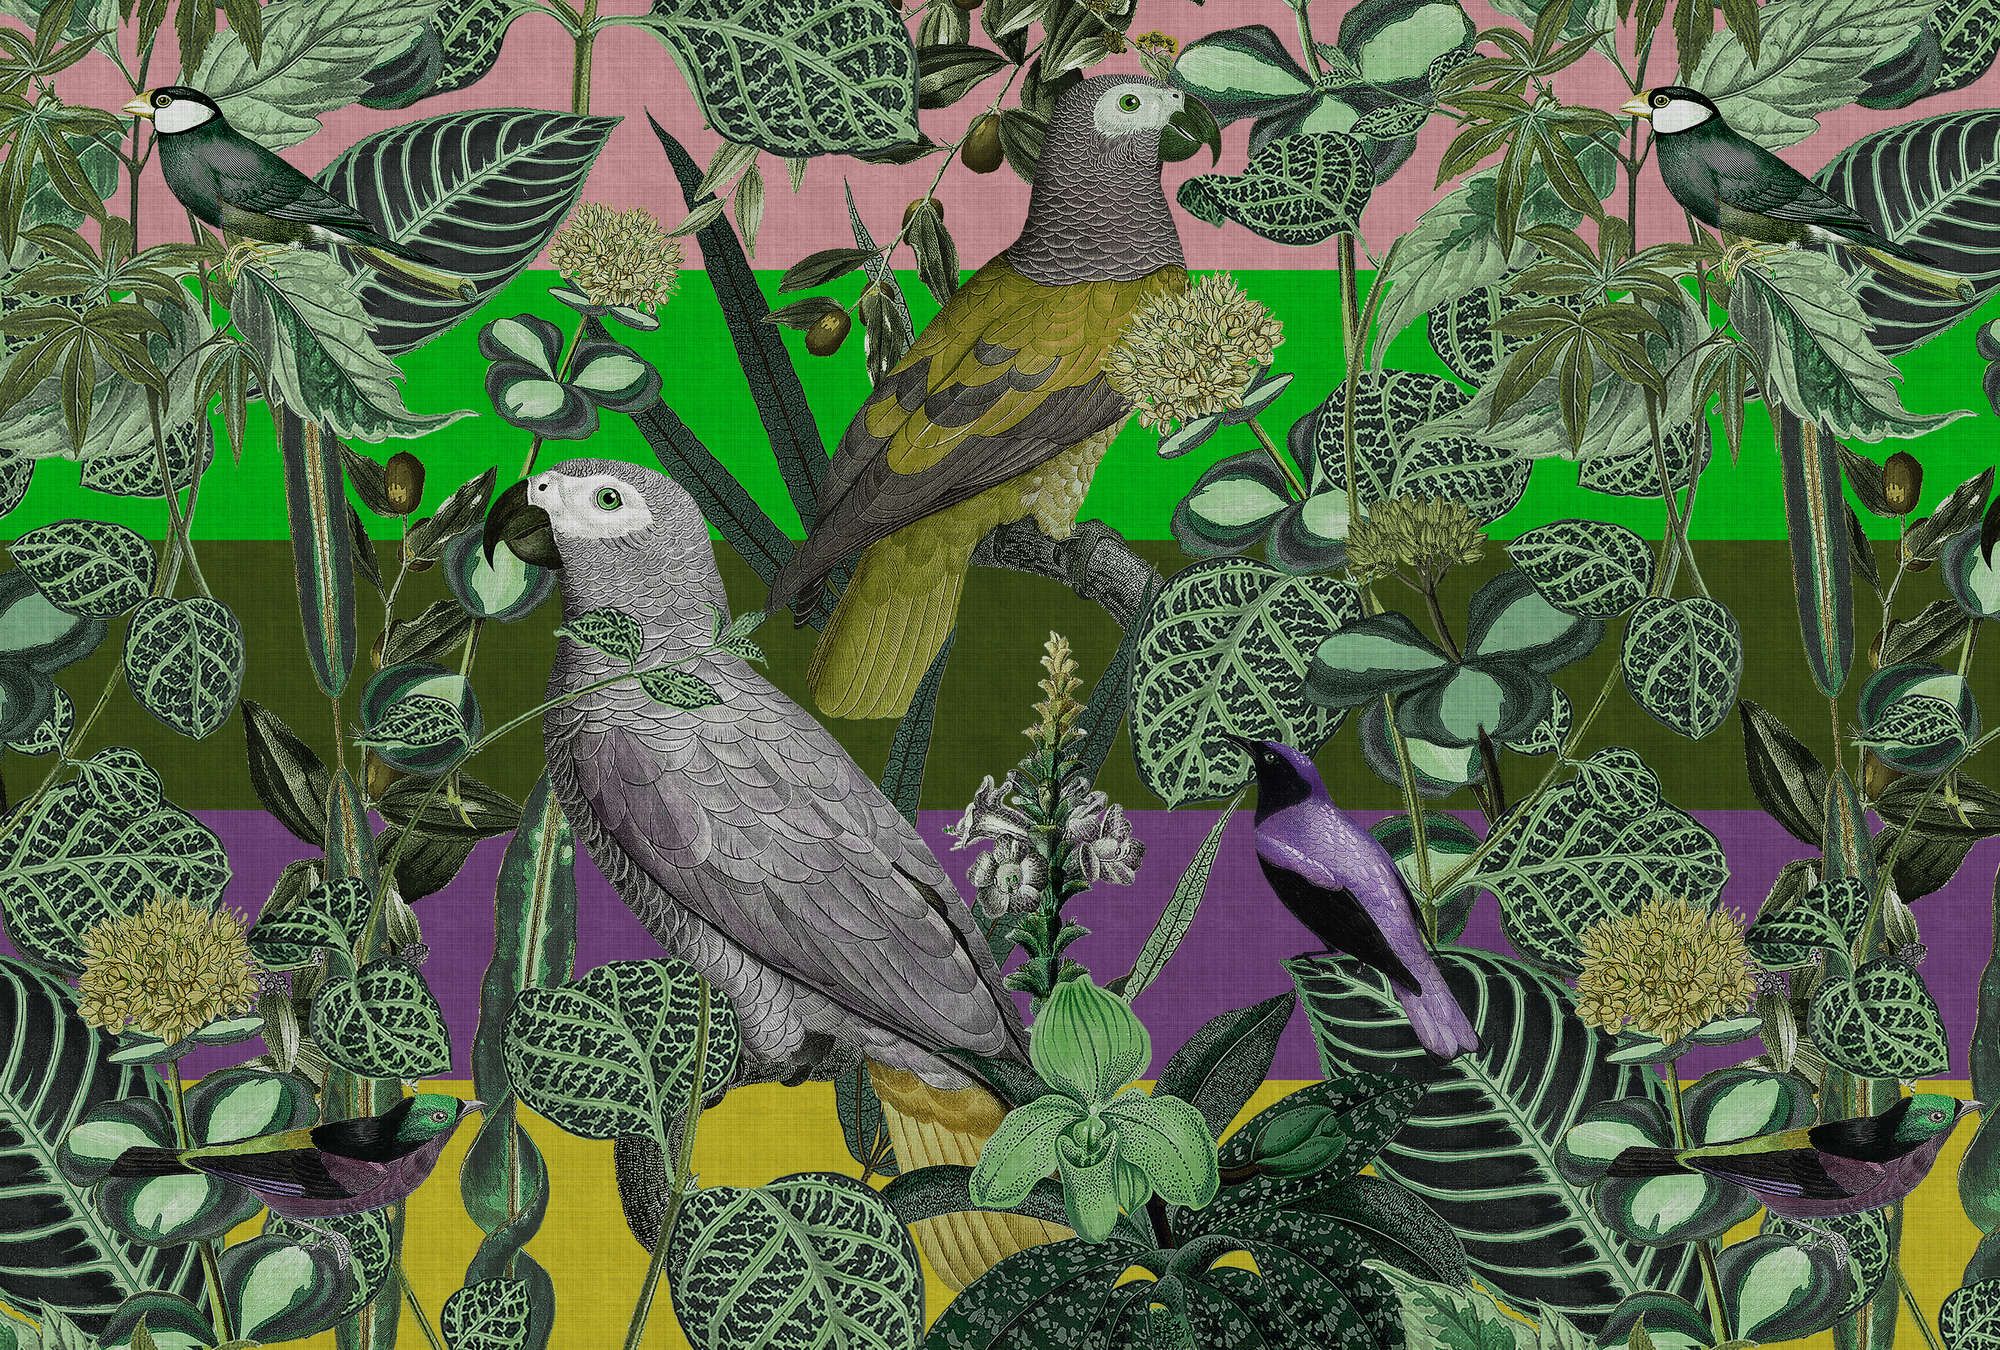             Fototapete »amazona 2« - Exotische Vögel – Grün | Glattes, leicht perlmutt-schimmerndes Vlies
        